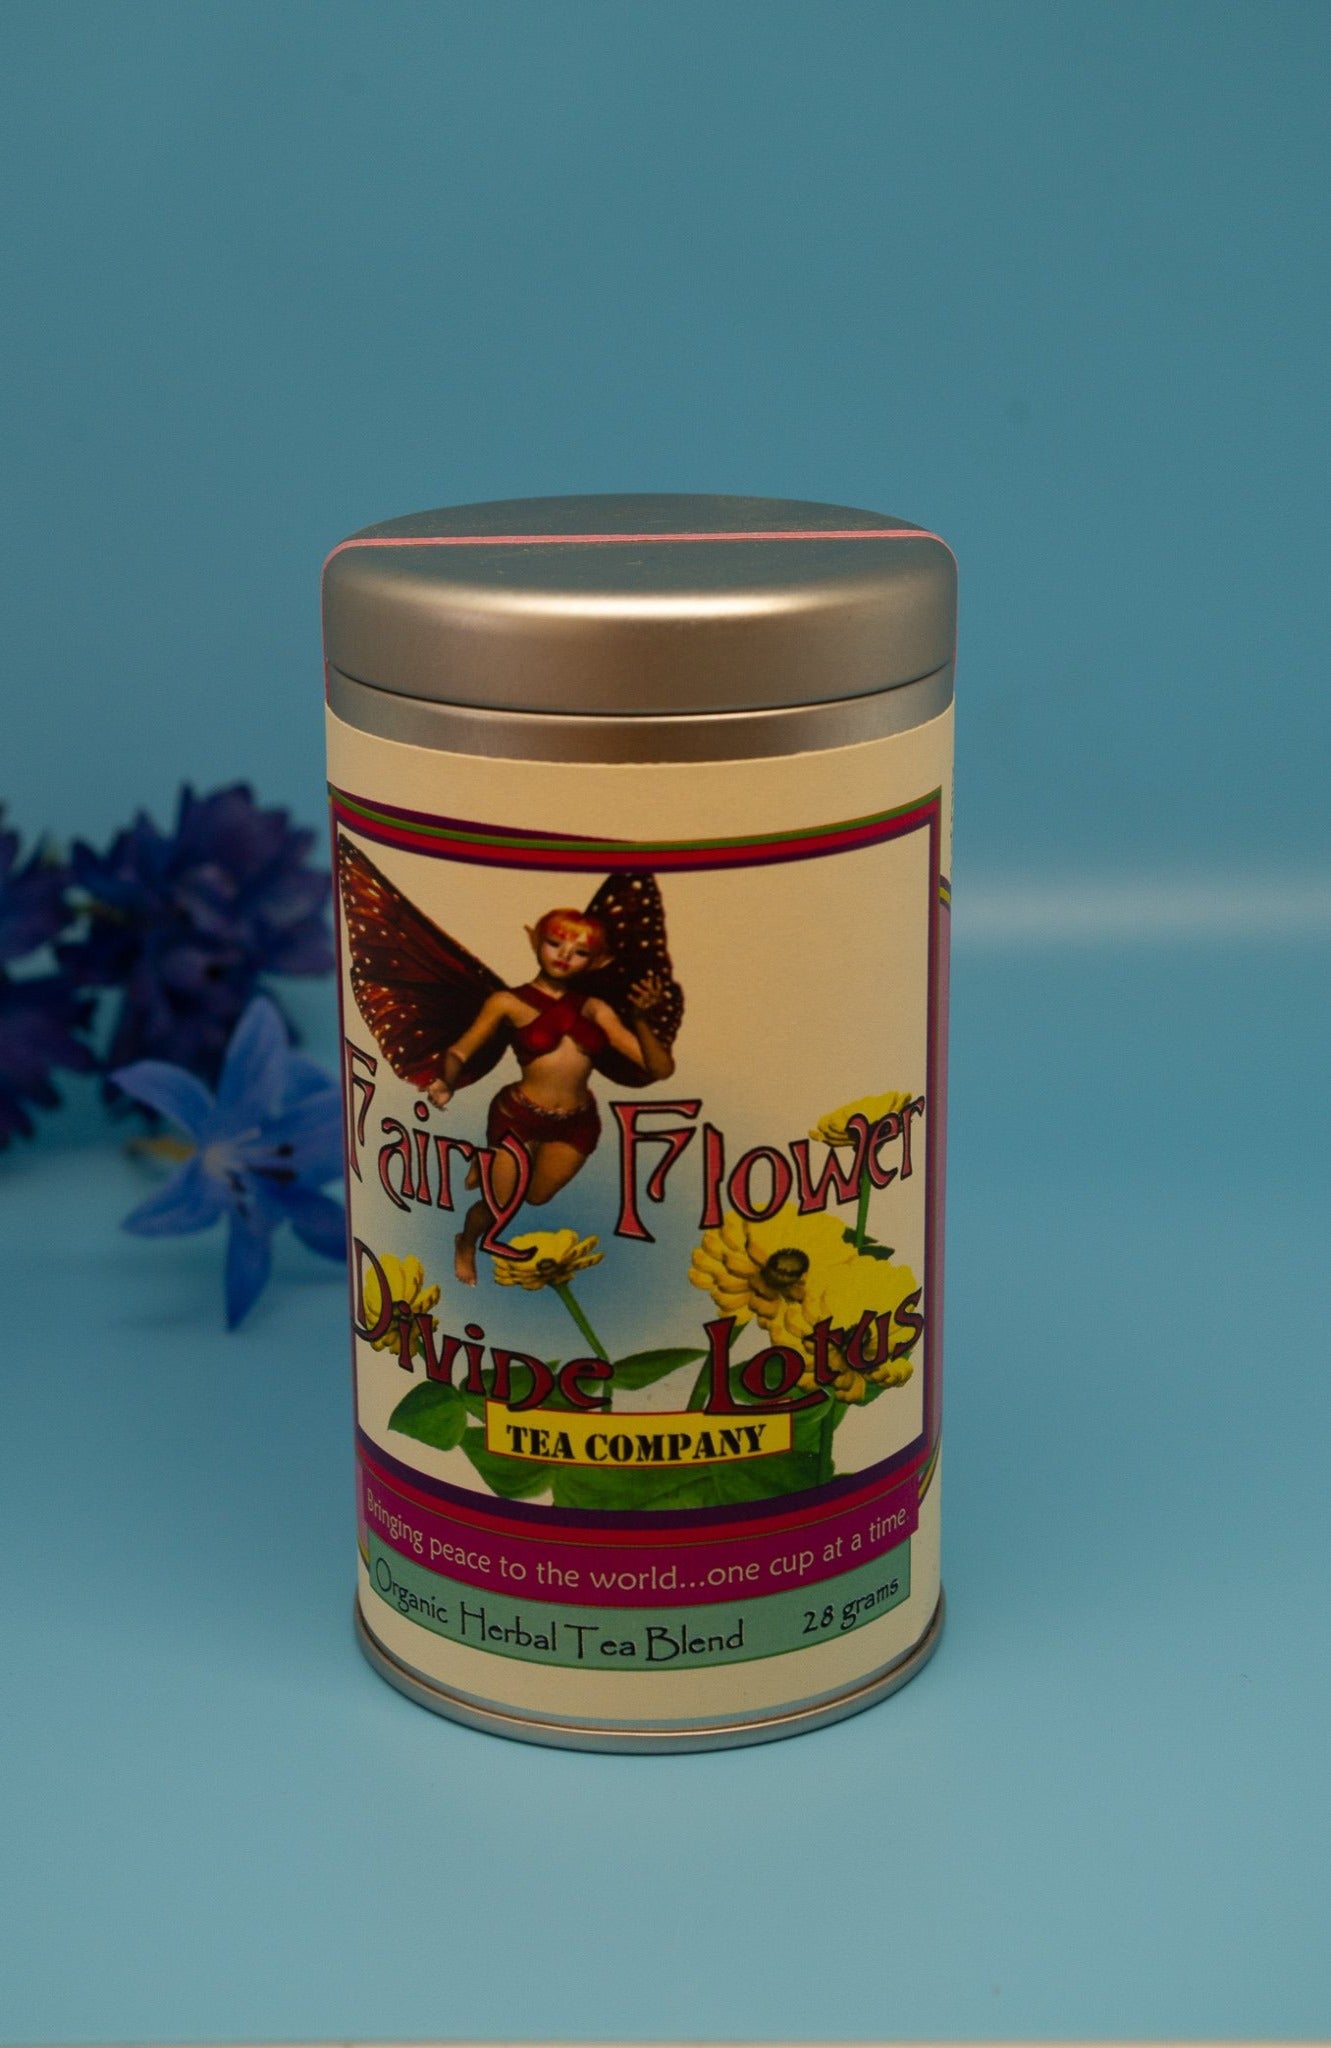 Fairy Flower Herbal Tea